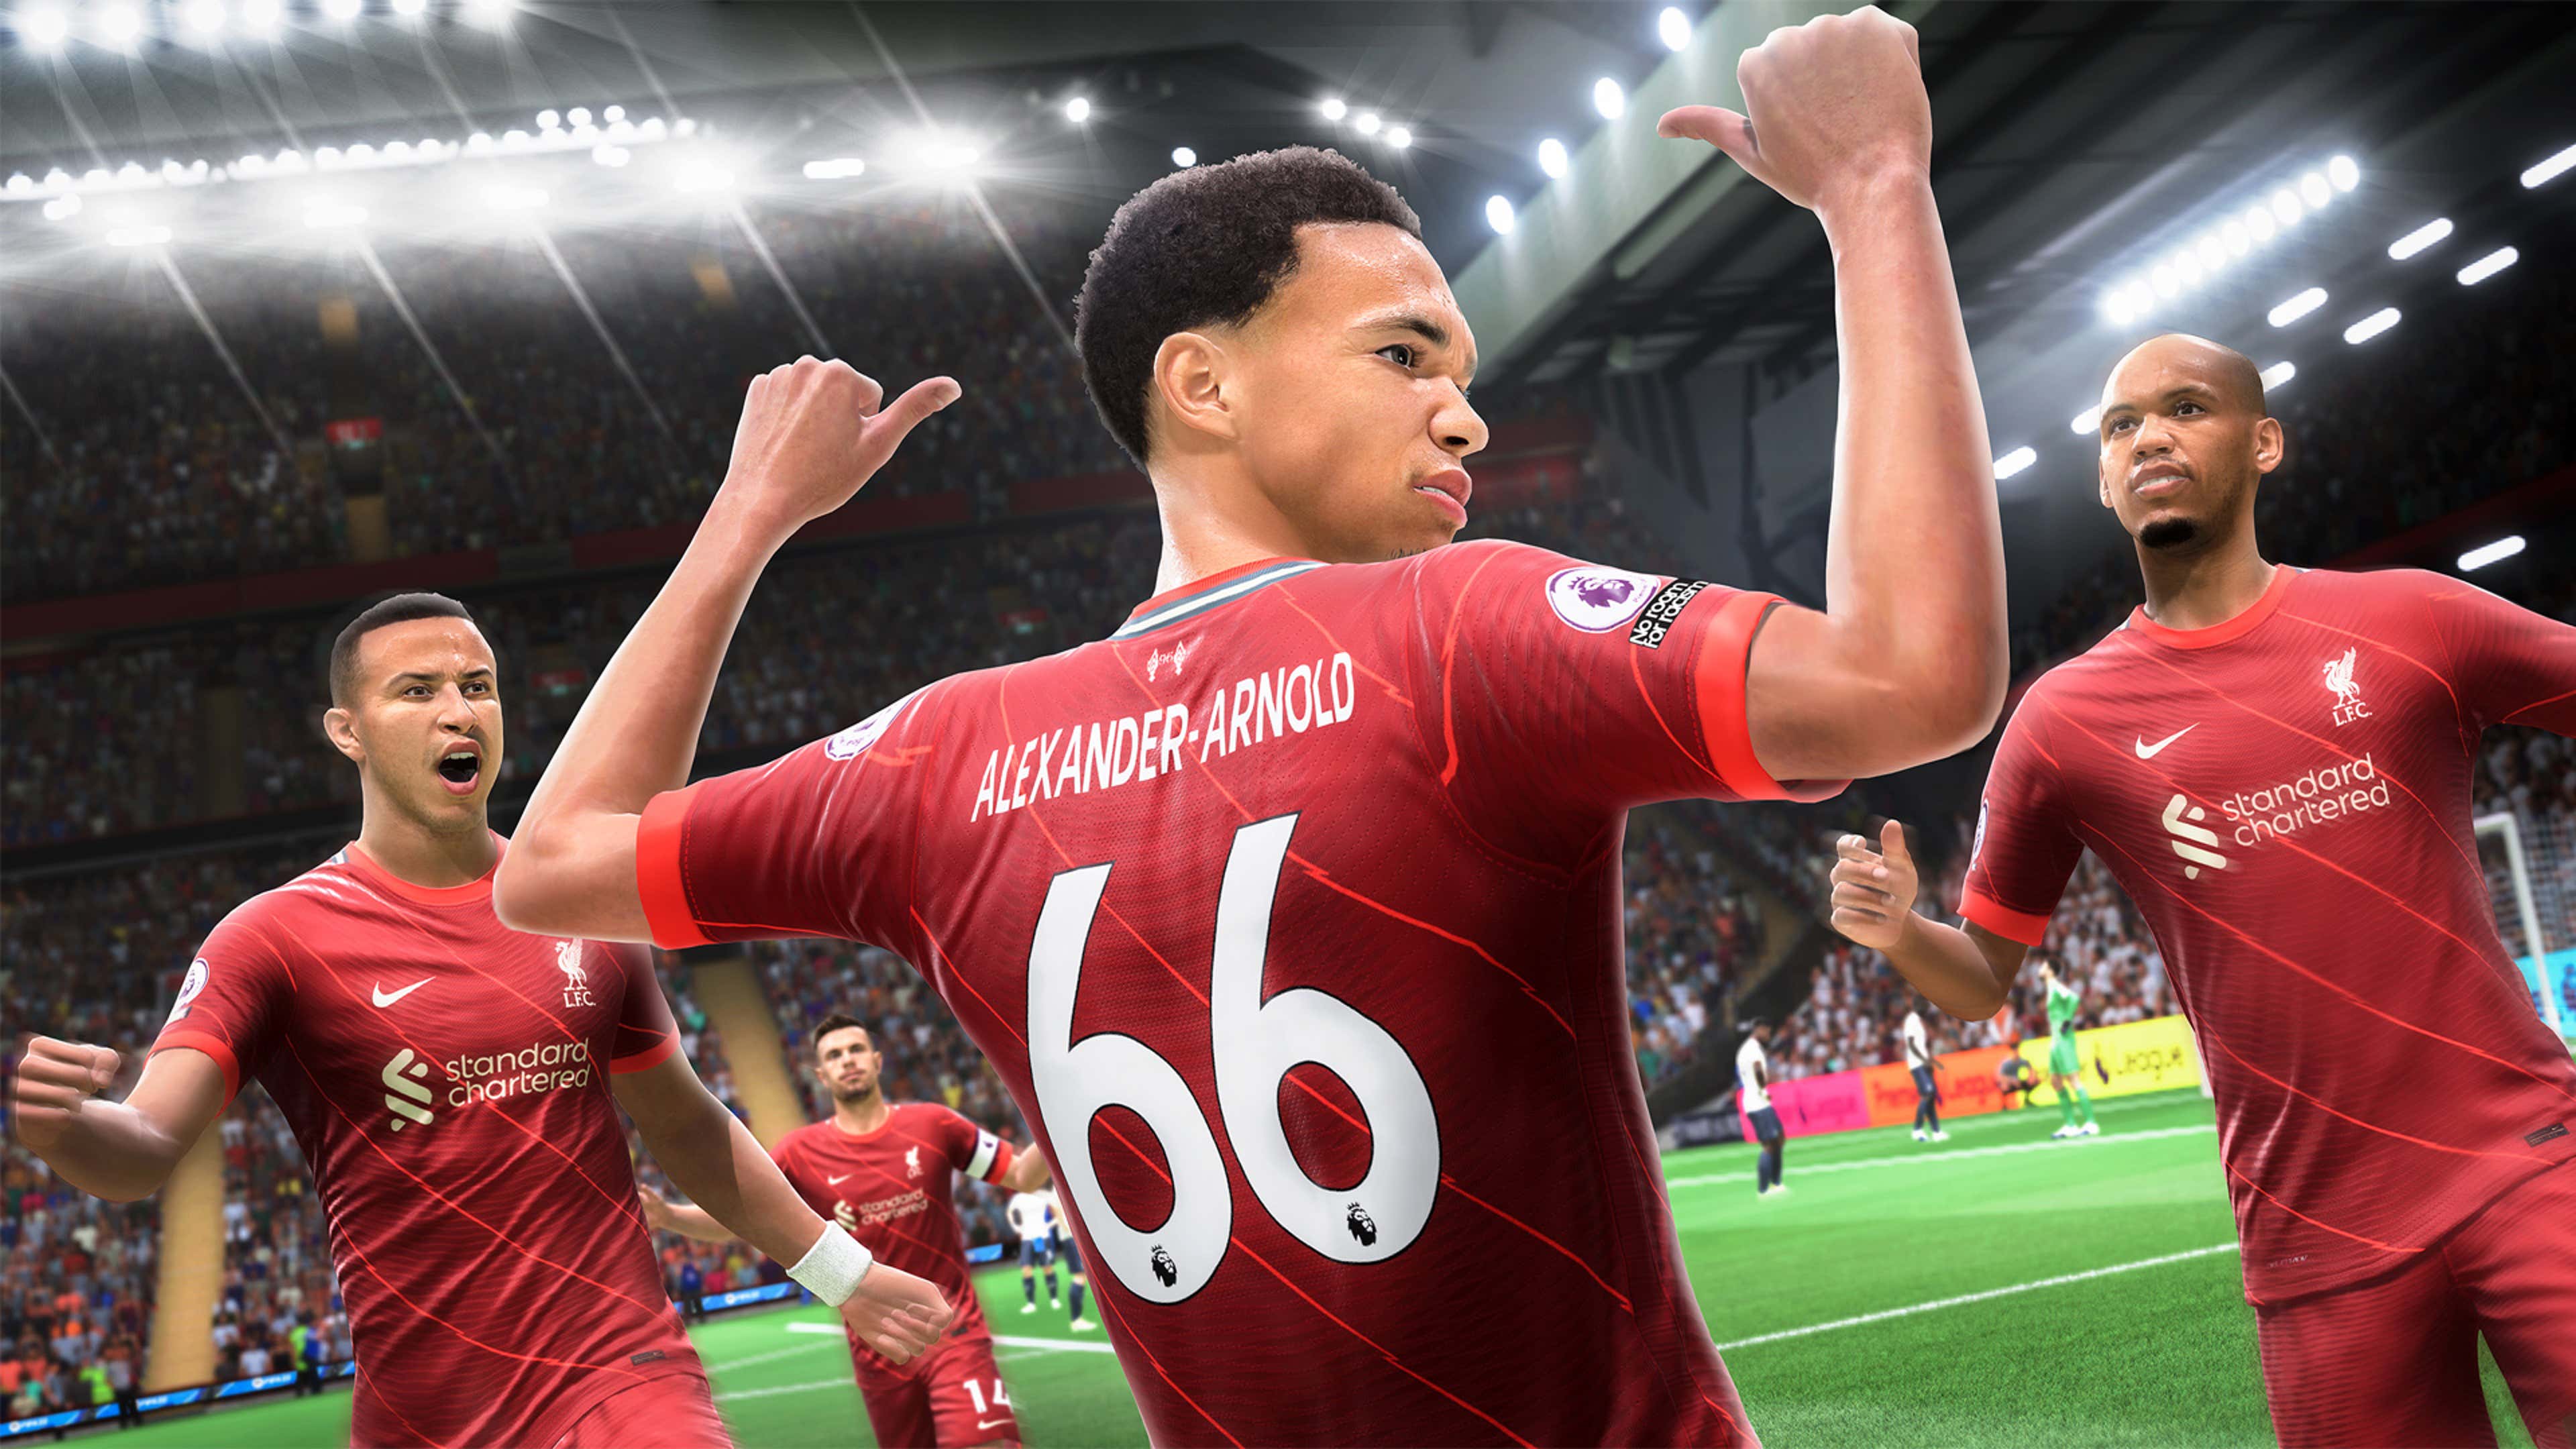 FIFA 23: Requisitos mínimos e recomendados para rodar game no PC